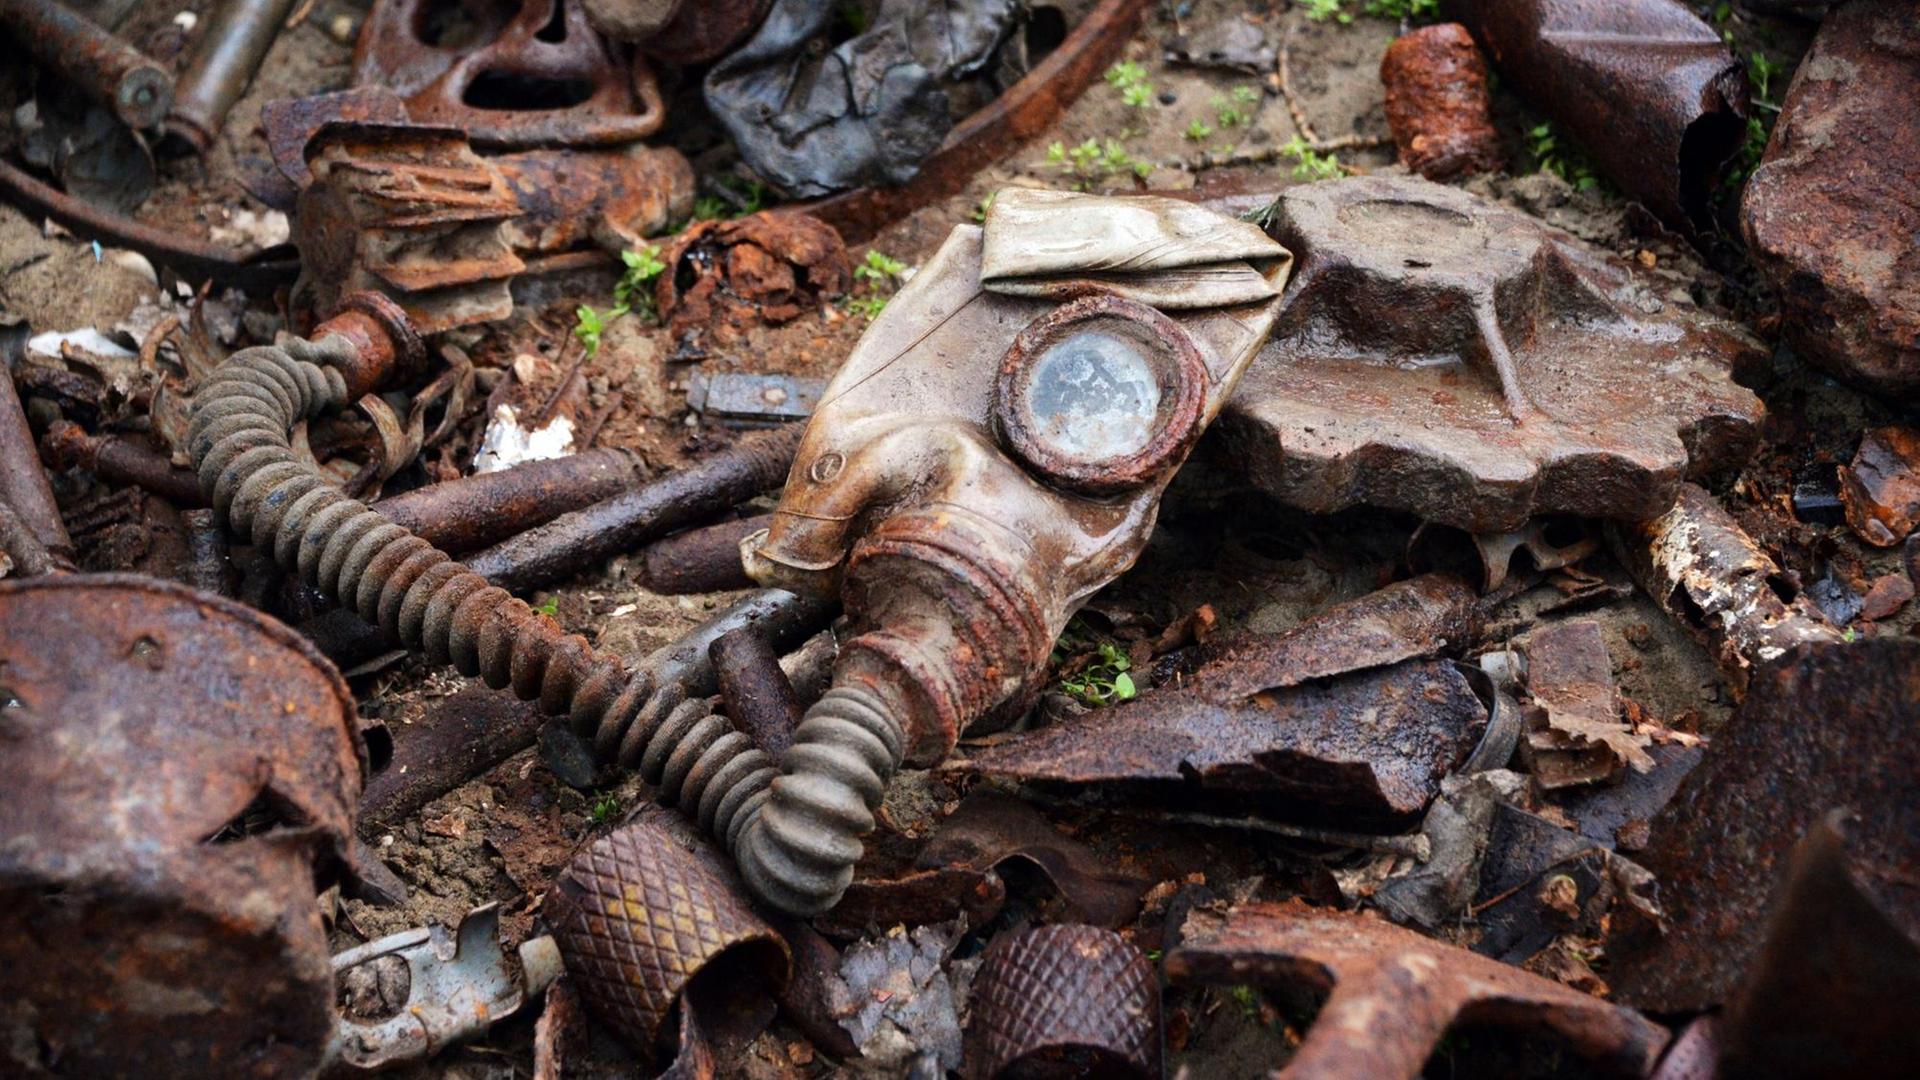 Überbleibsel einer Gasmaske und andere verrostete Metallteile aus dem Zweiten Weltkrieg liegen auf dem Boden.